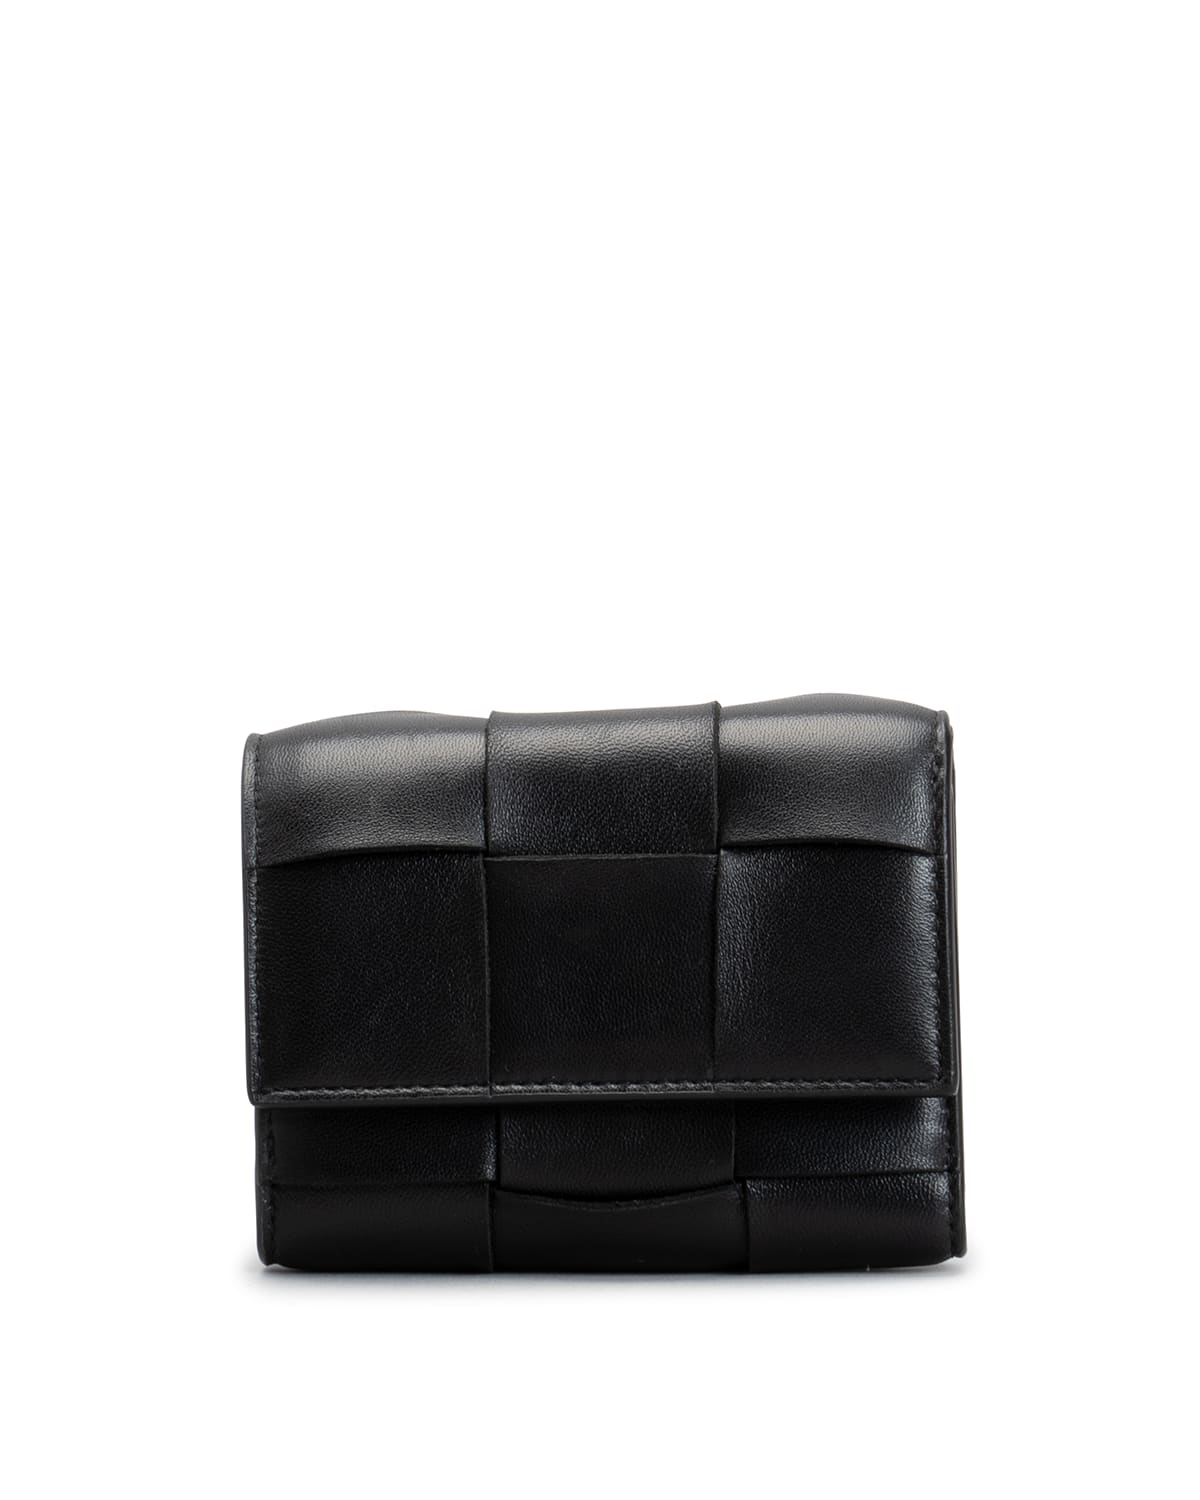 Bottega Veneta Intrecciato Woven Trifold Leather Wallet